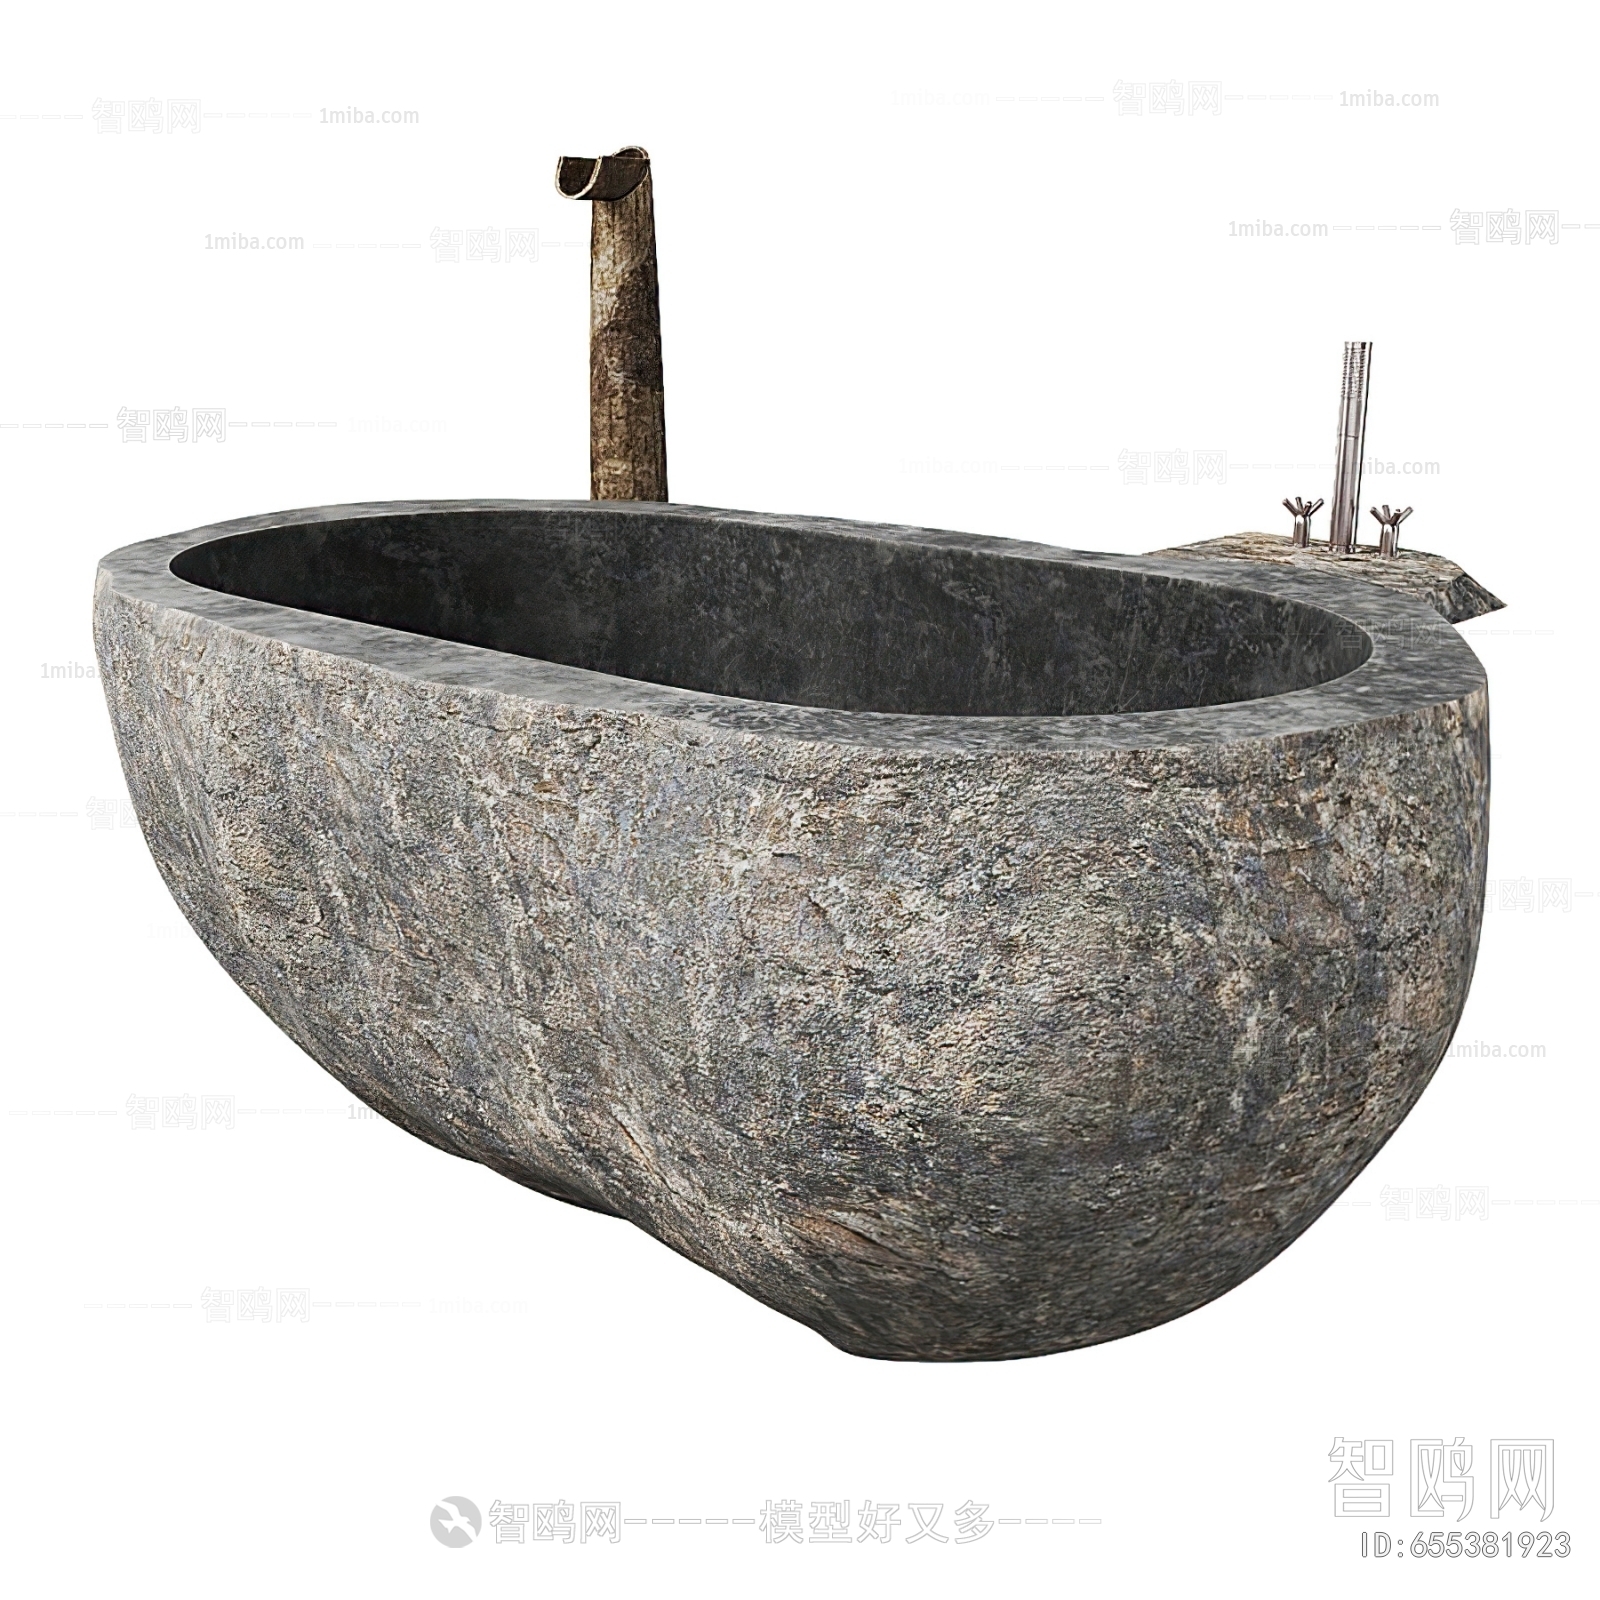 Chinese Style Wabi-sabi Style Bathtub